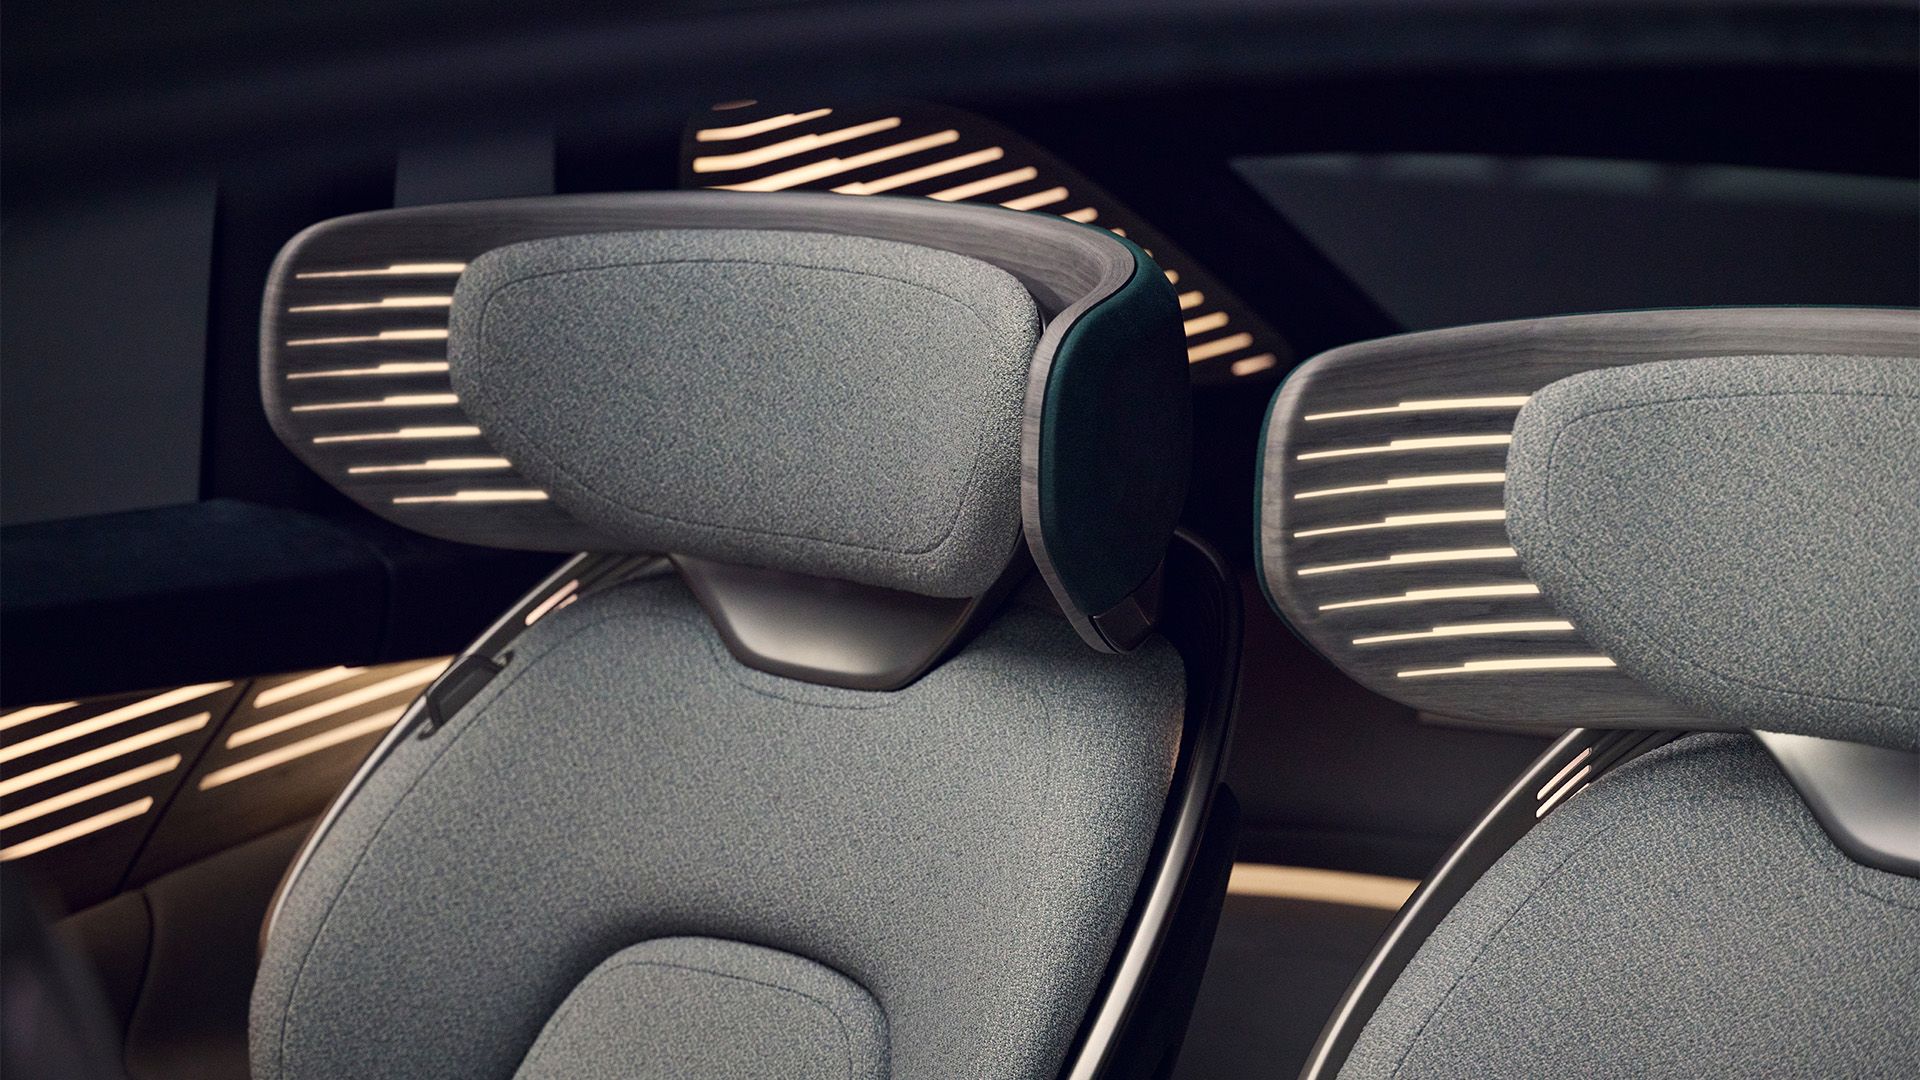 Een close-up van twee stoelen van de Audi urbansphere concept met lichtelemen-ten in de hoofdsteun.